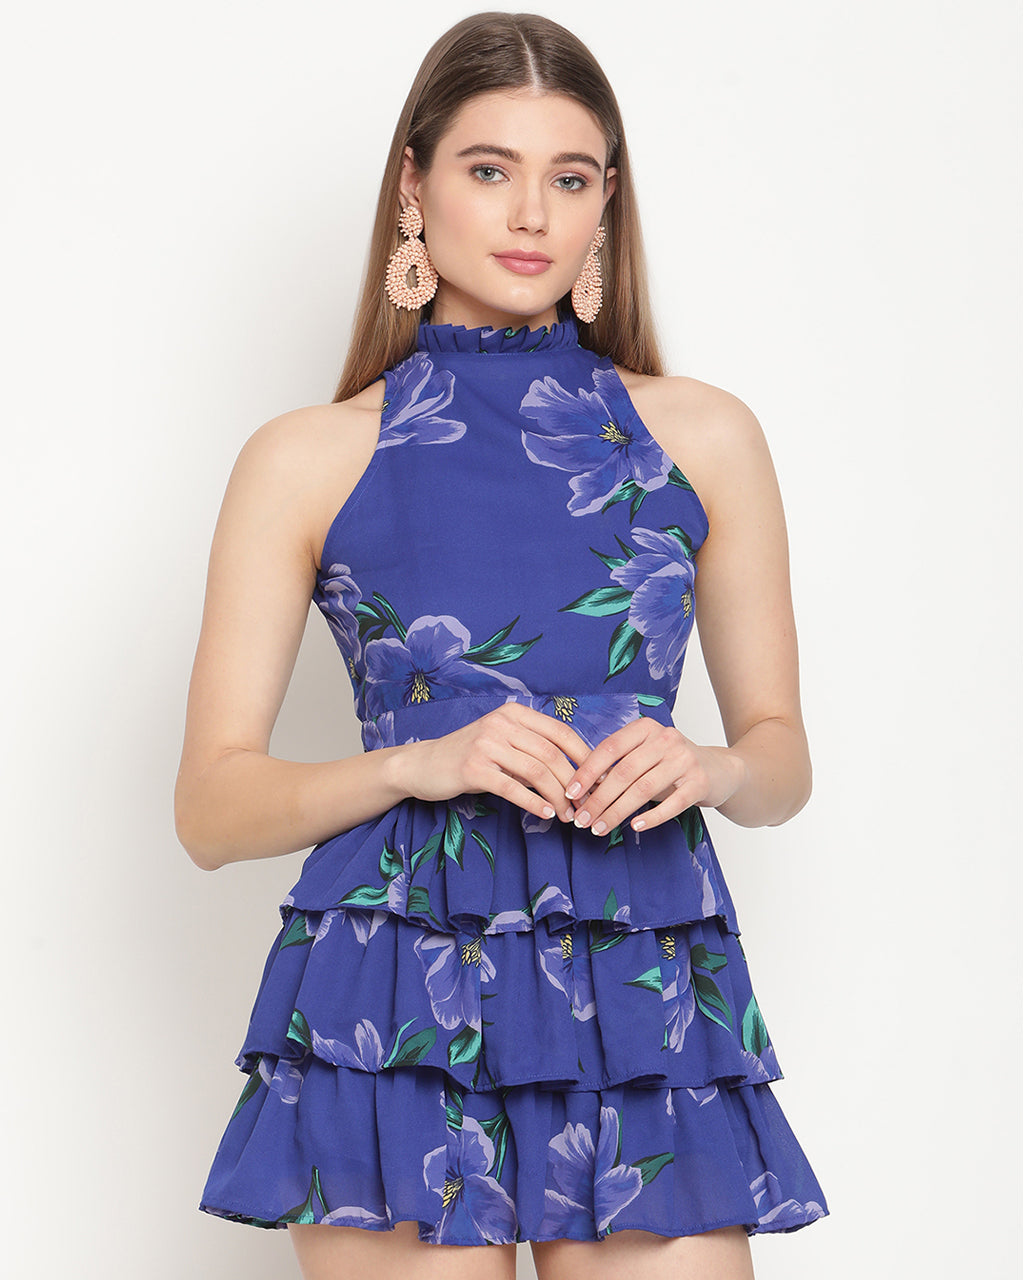 Blue Canary dress